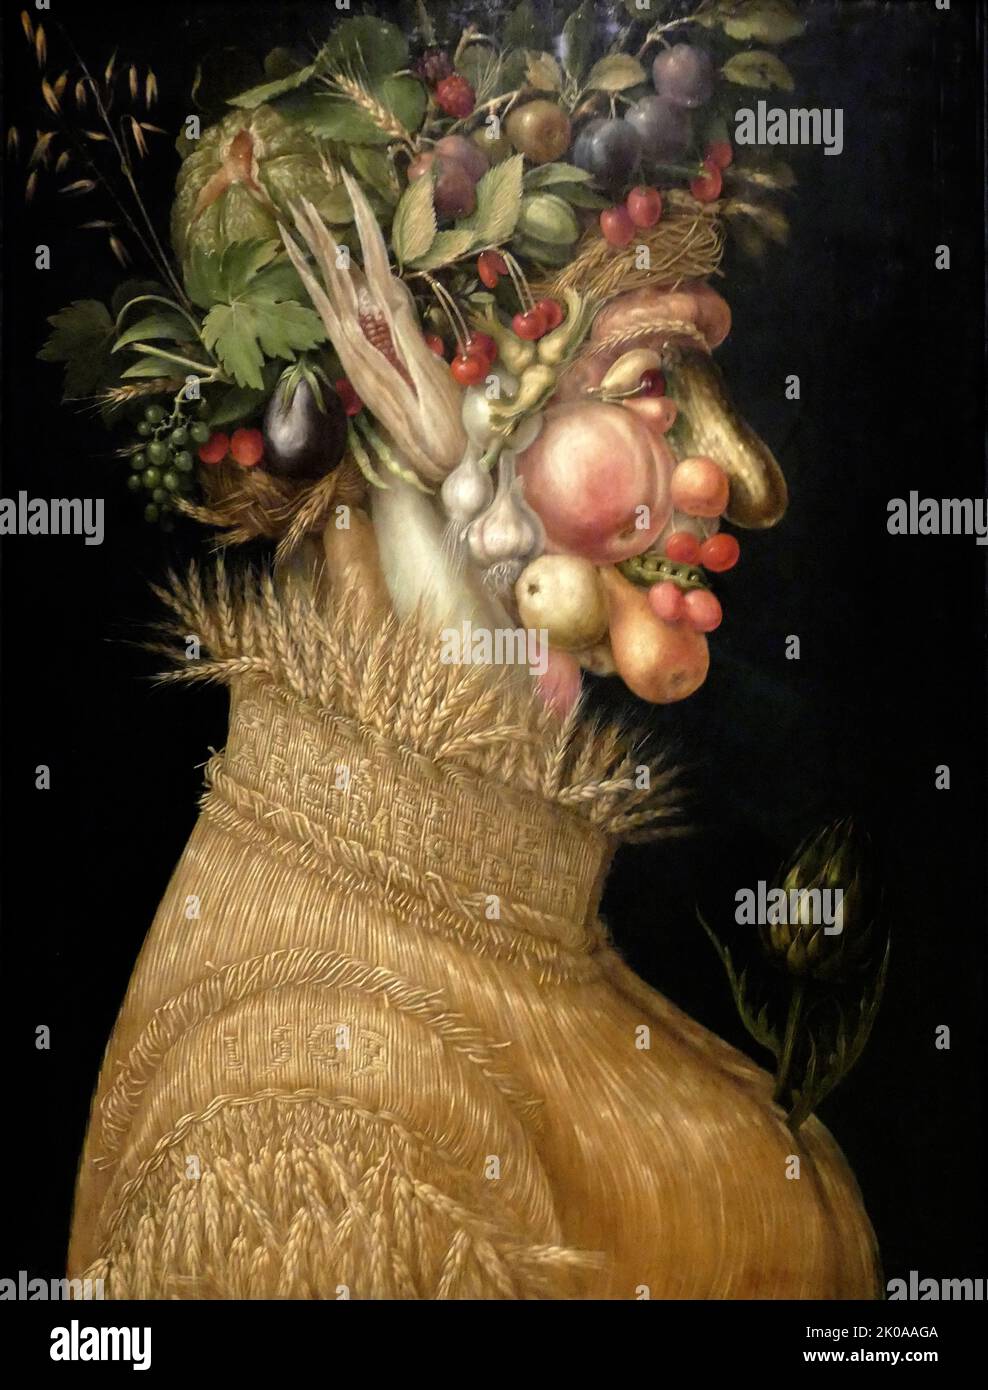 Die Gemälde Winter und Wasser von Giuseppe Arcimboldo (1526 oder 1527 - 11. Juli 1593), einem italienischen Maler, der vor allem dafür bekannt ist, phantasievolle Porträtköpfe zu kreieren, die ausschließlich aus Gegenständen wie Obst, Gemüse, Blumen, Fisch und Büchern bestehen Stockfoto